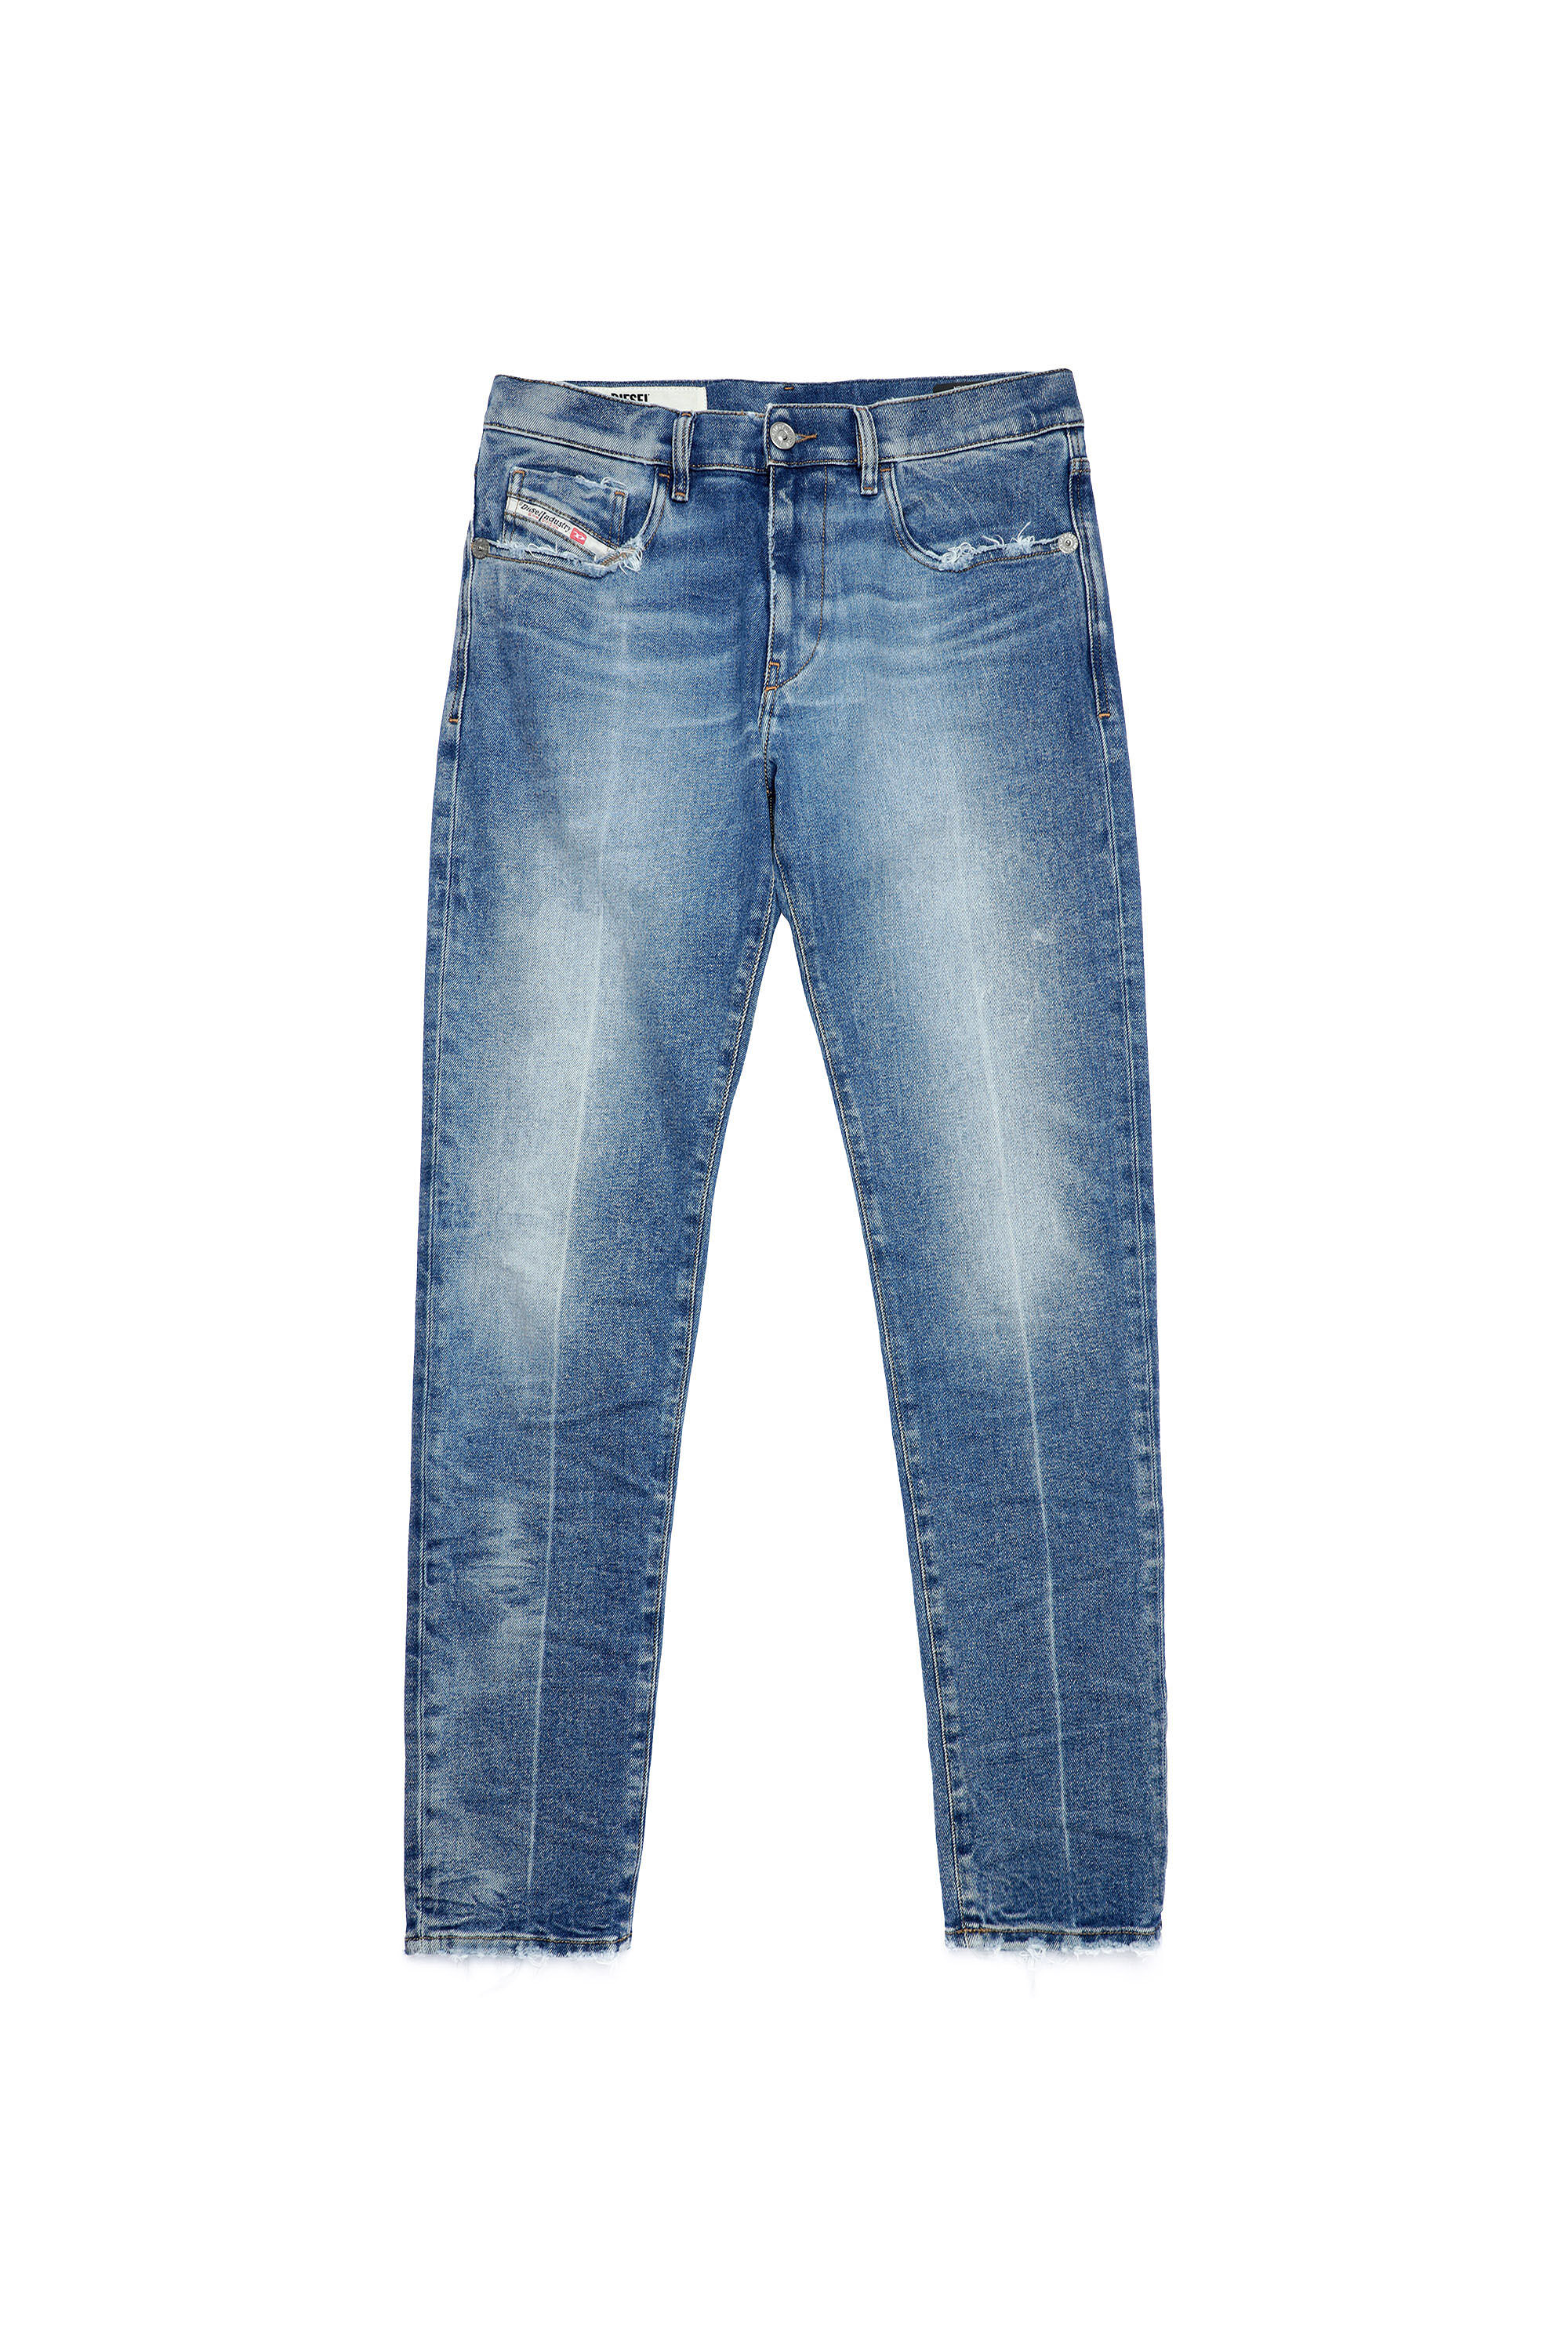 Diesel - 2019 D-STRUKT 09A26 Slim Jeans,  - Image 2